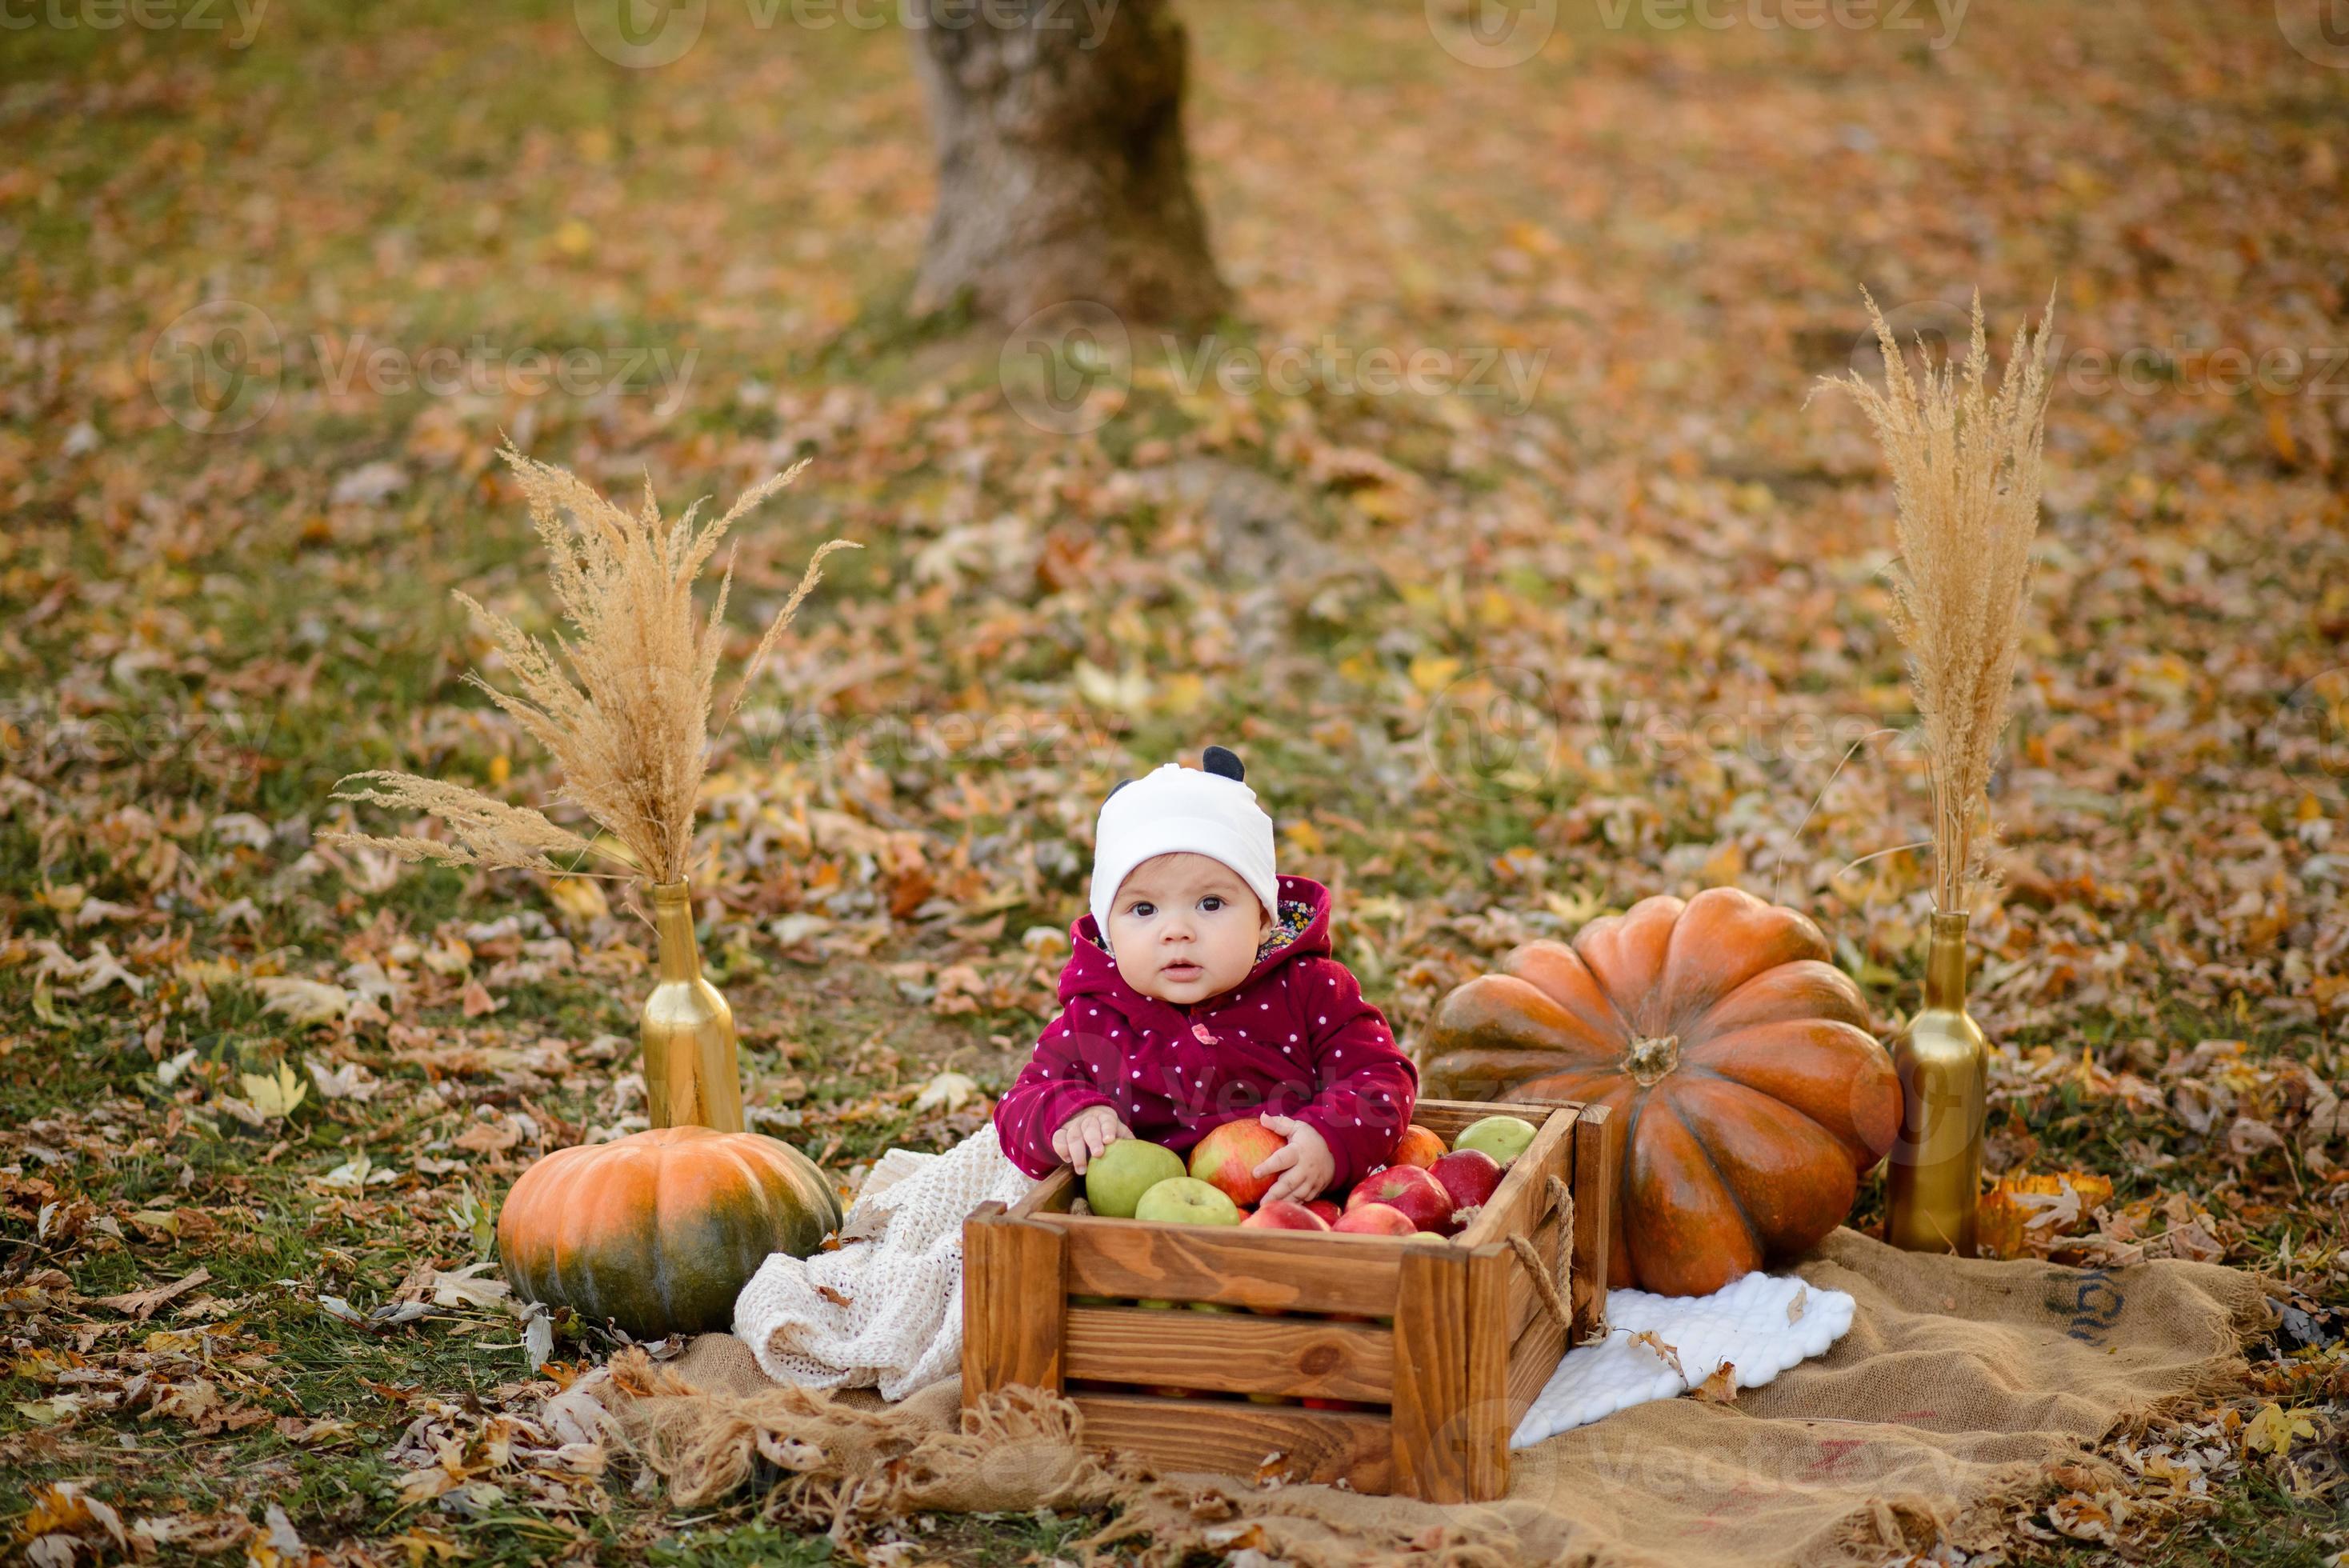 klein meisje kiest een appel voor de eerste voeding foto